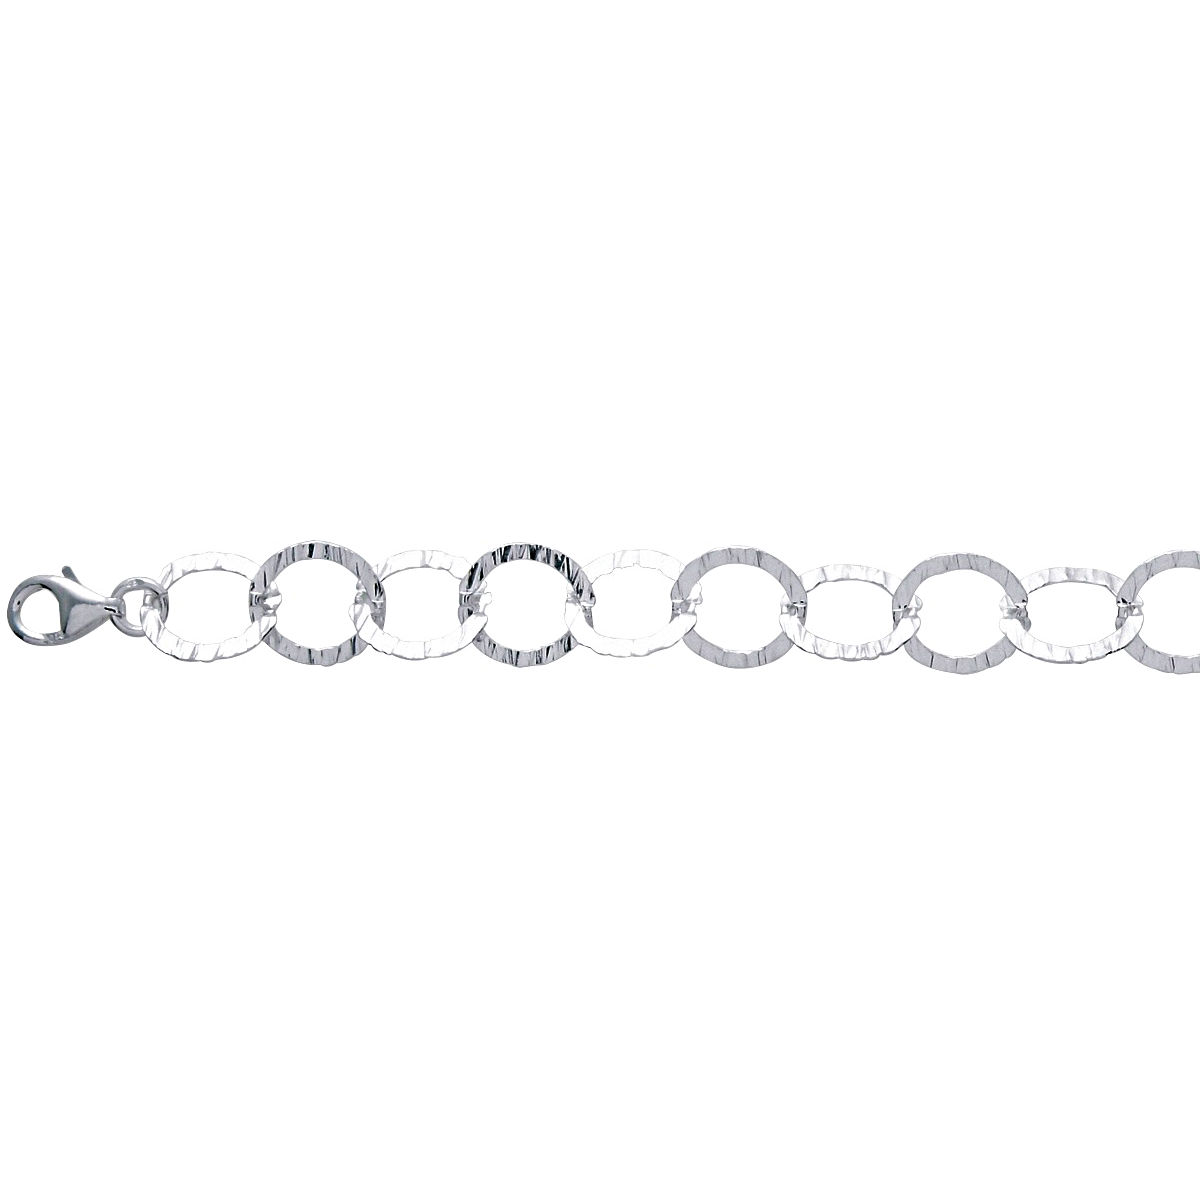 Bracelet ronds martelés 11mm, long. 19cm, argent 925